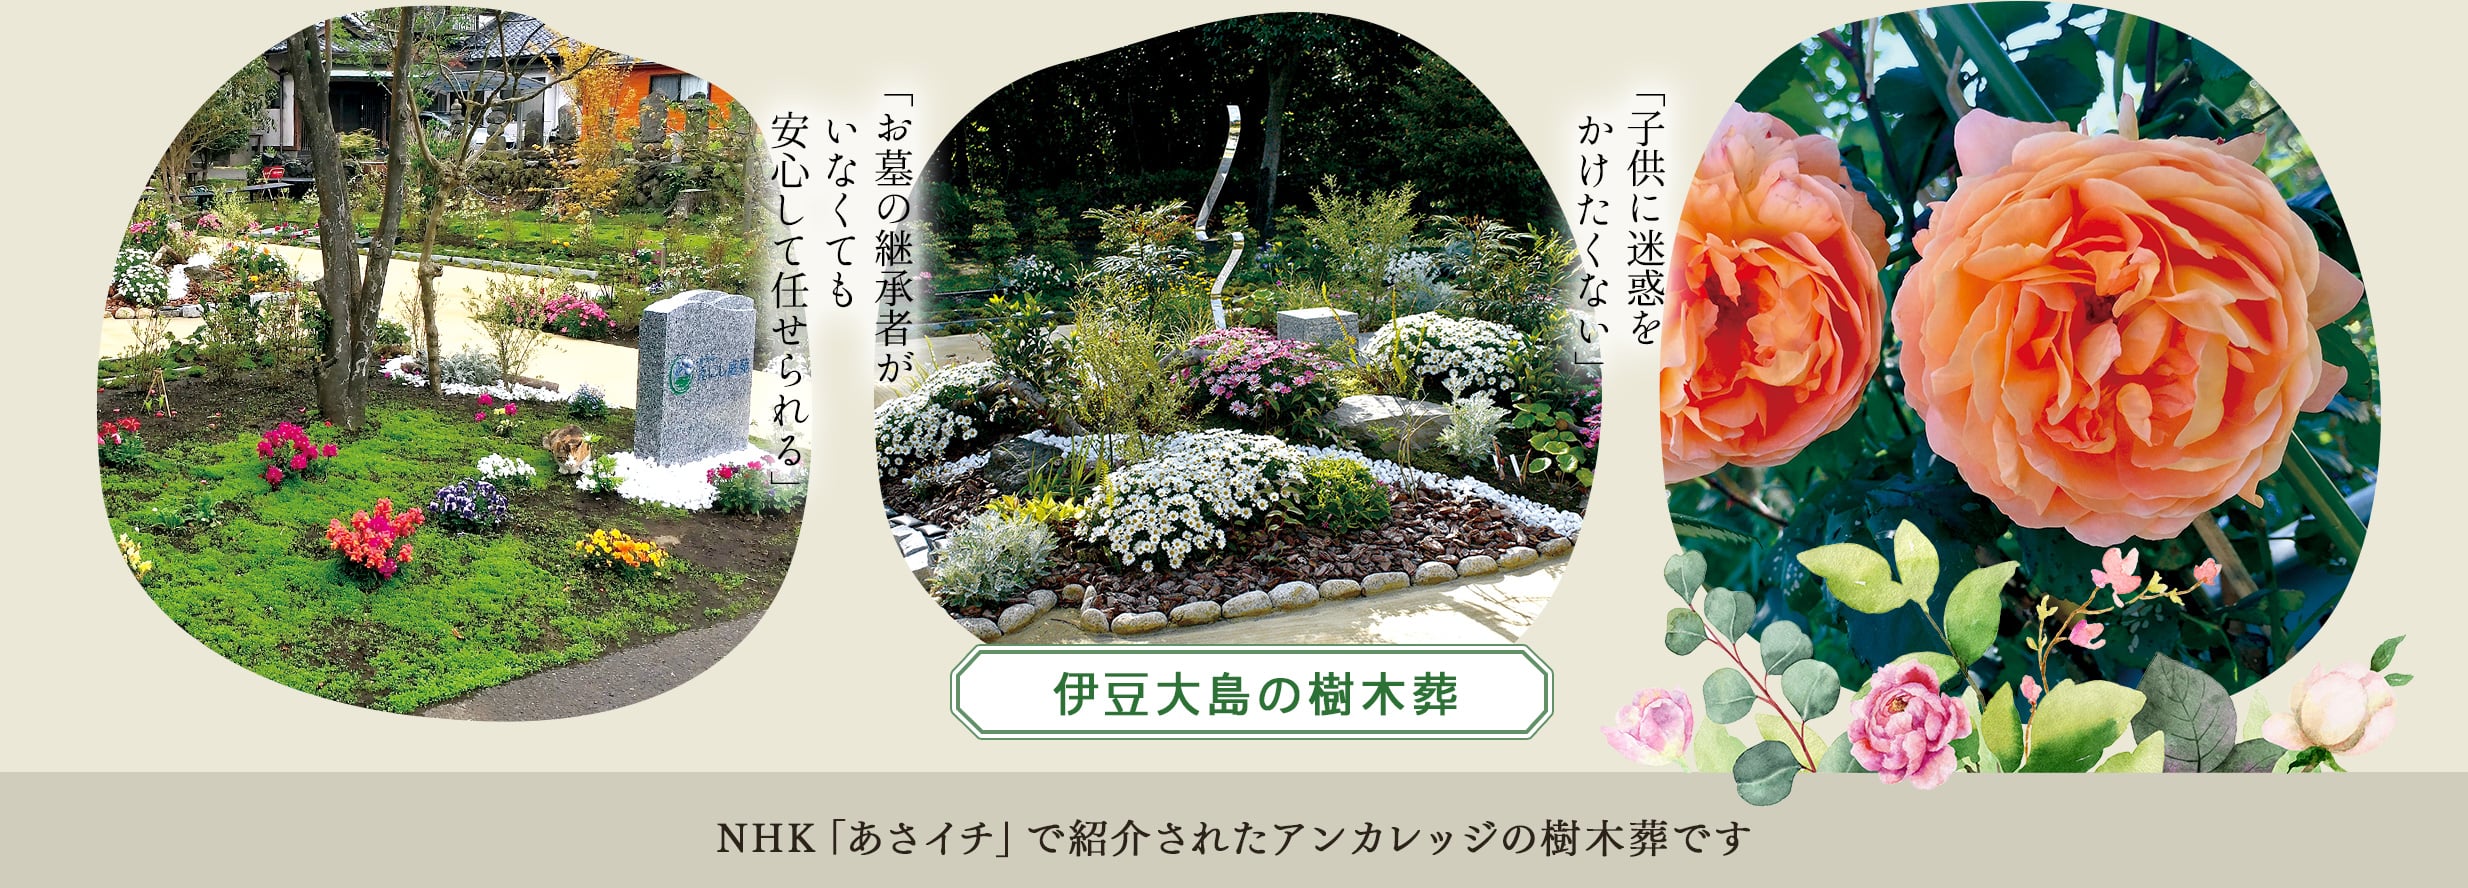 伊豆大島の樹木葬　NHKあさイチで紹介されたアンカレッジの樹木葬です。